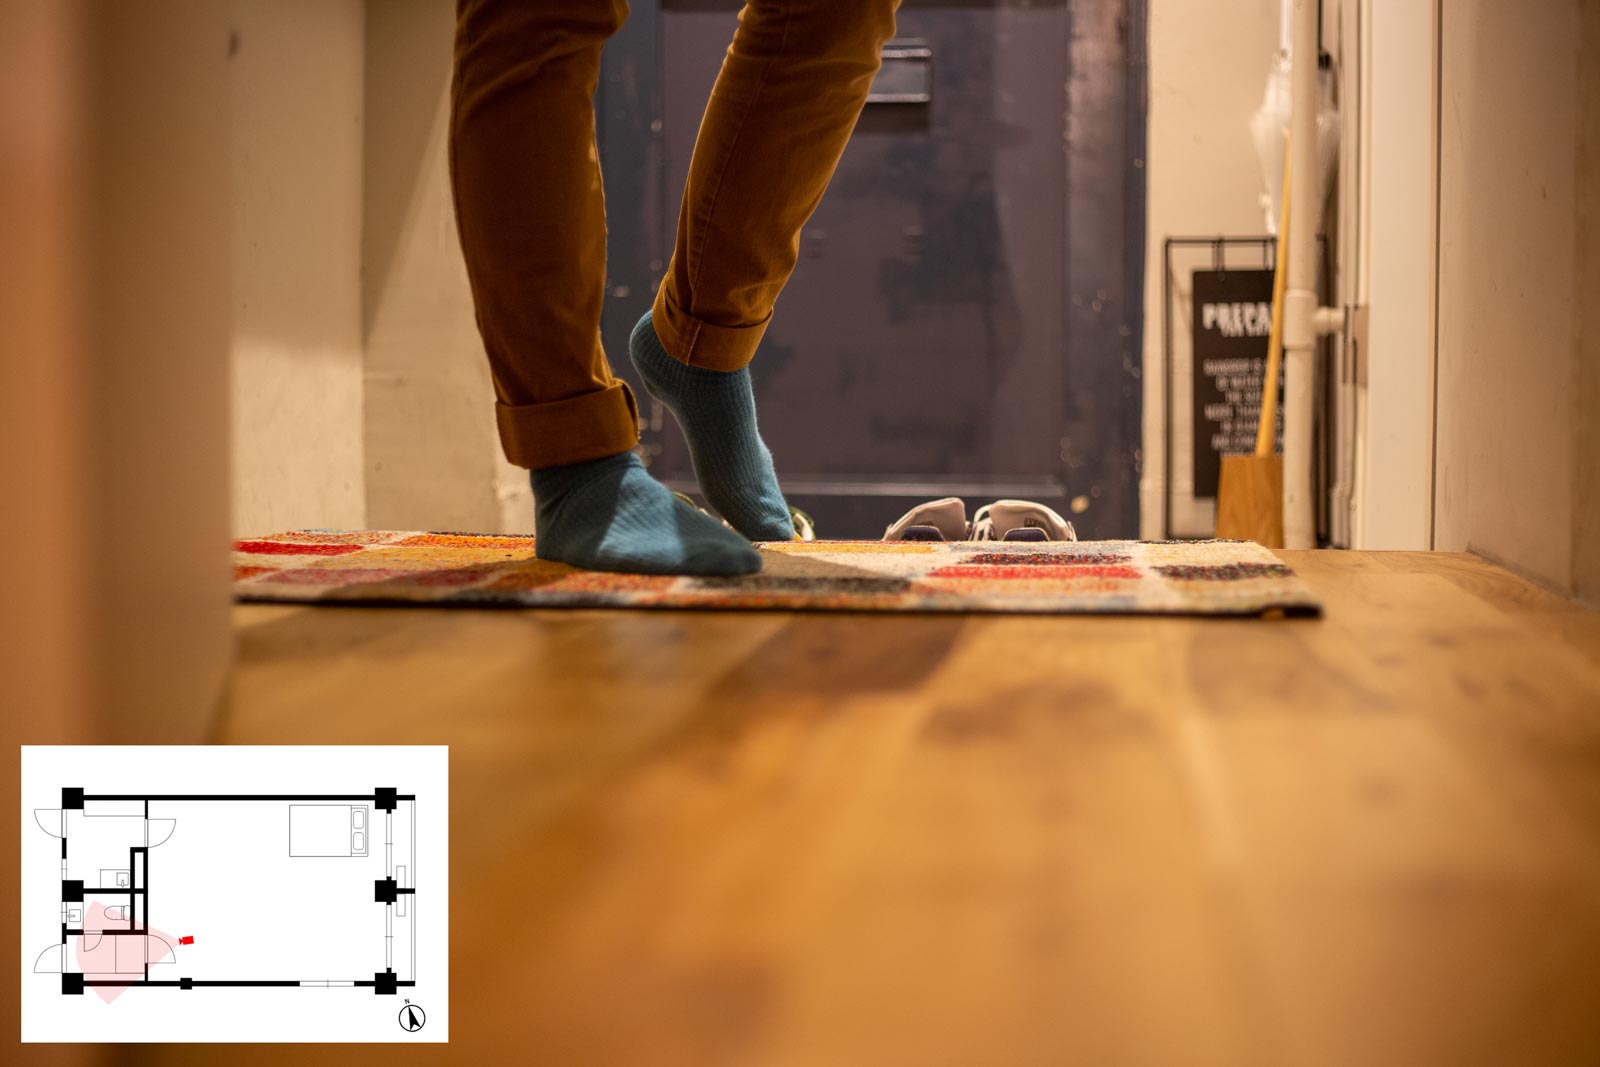 玄関の足元を撮影する構図では、足の向きで外出シーン・帰宅シーンを表現することができる